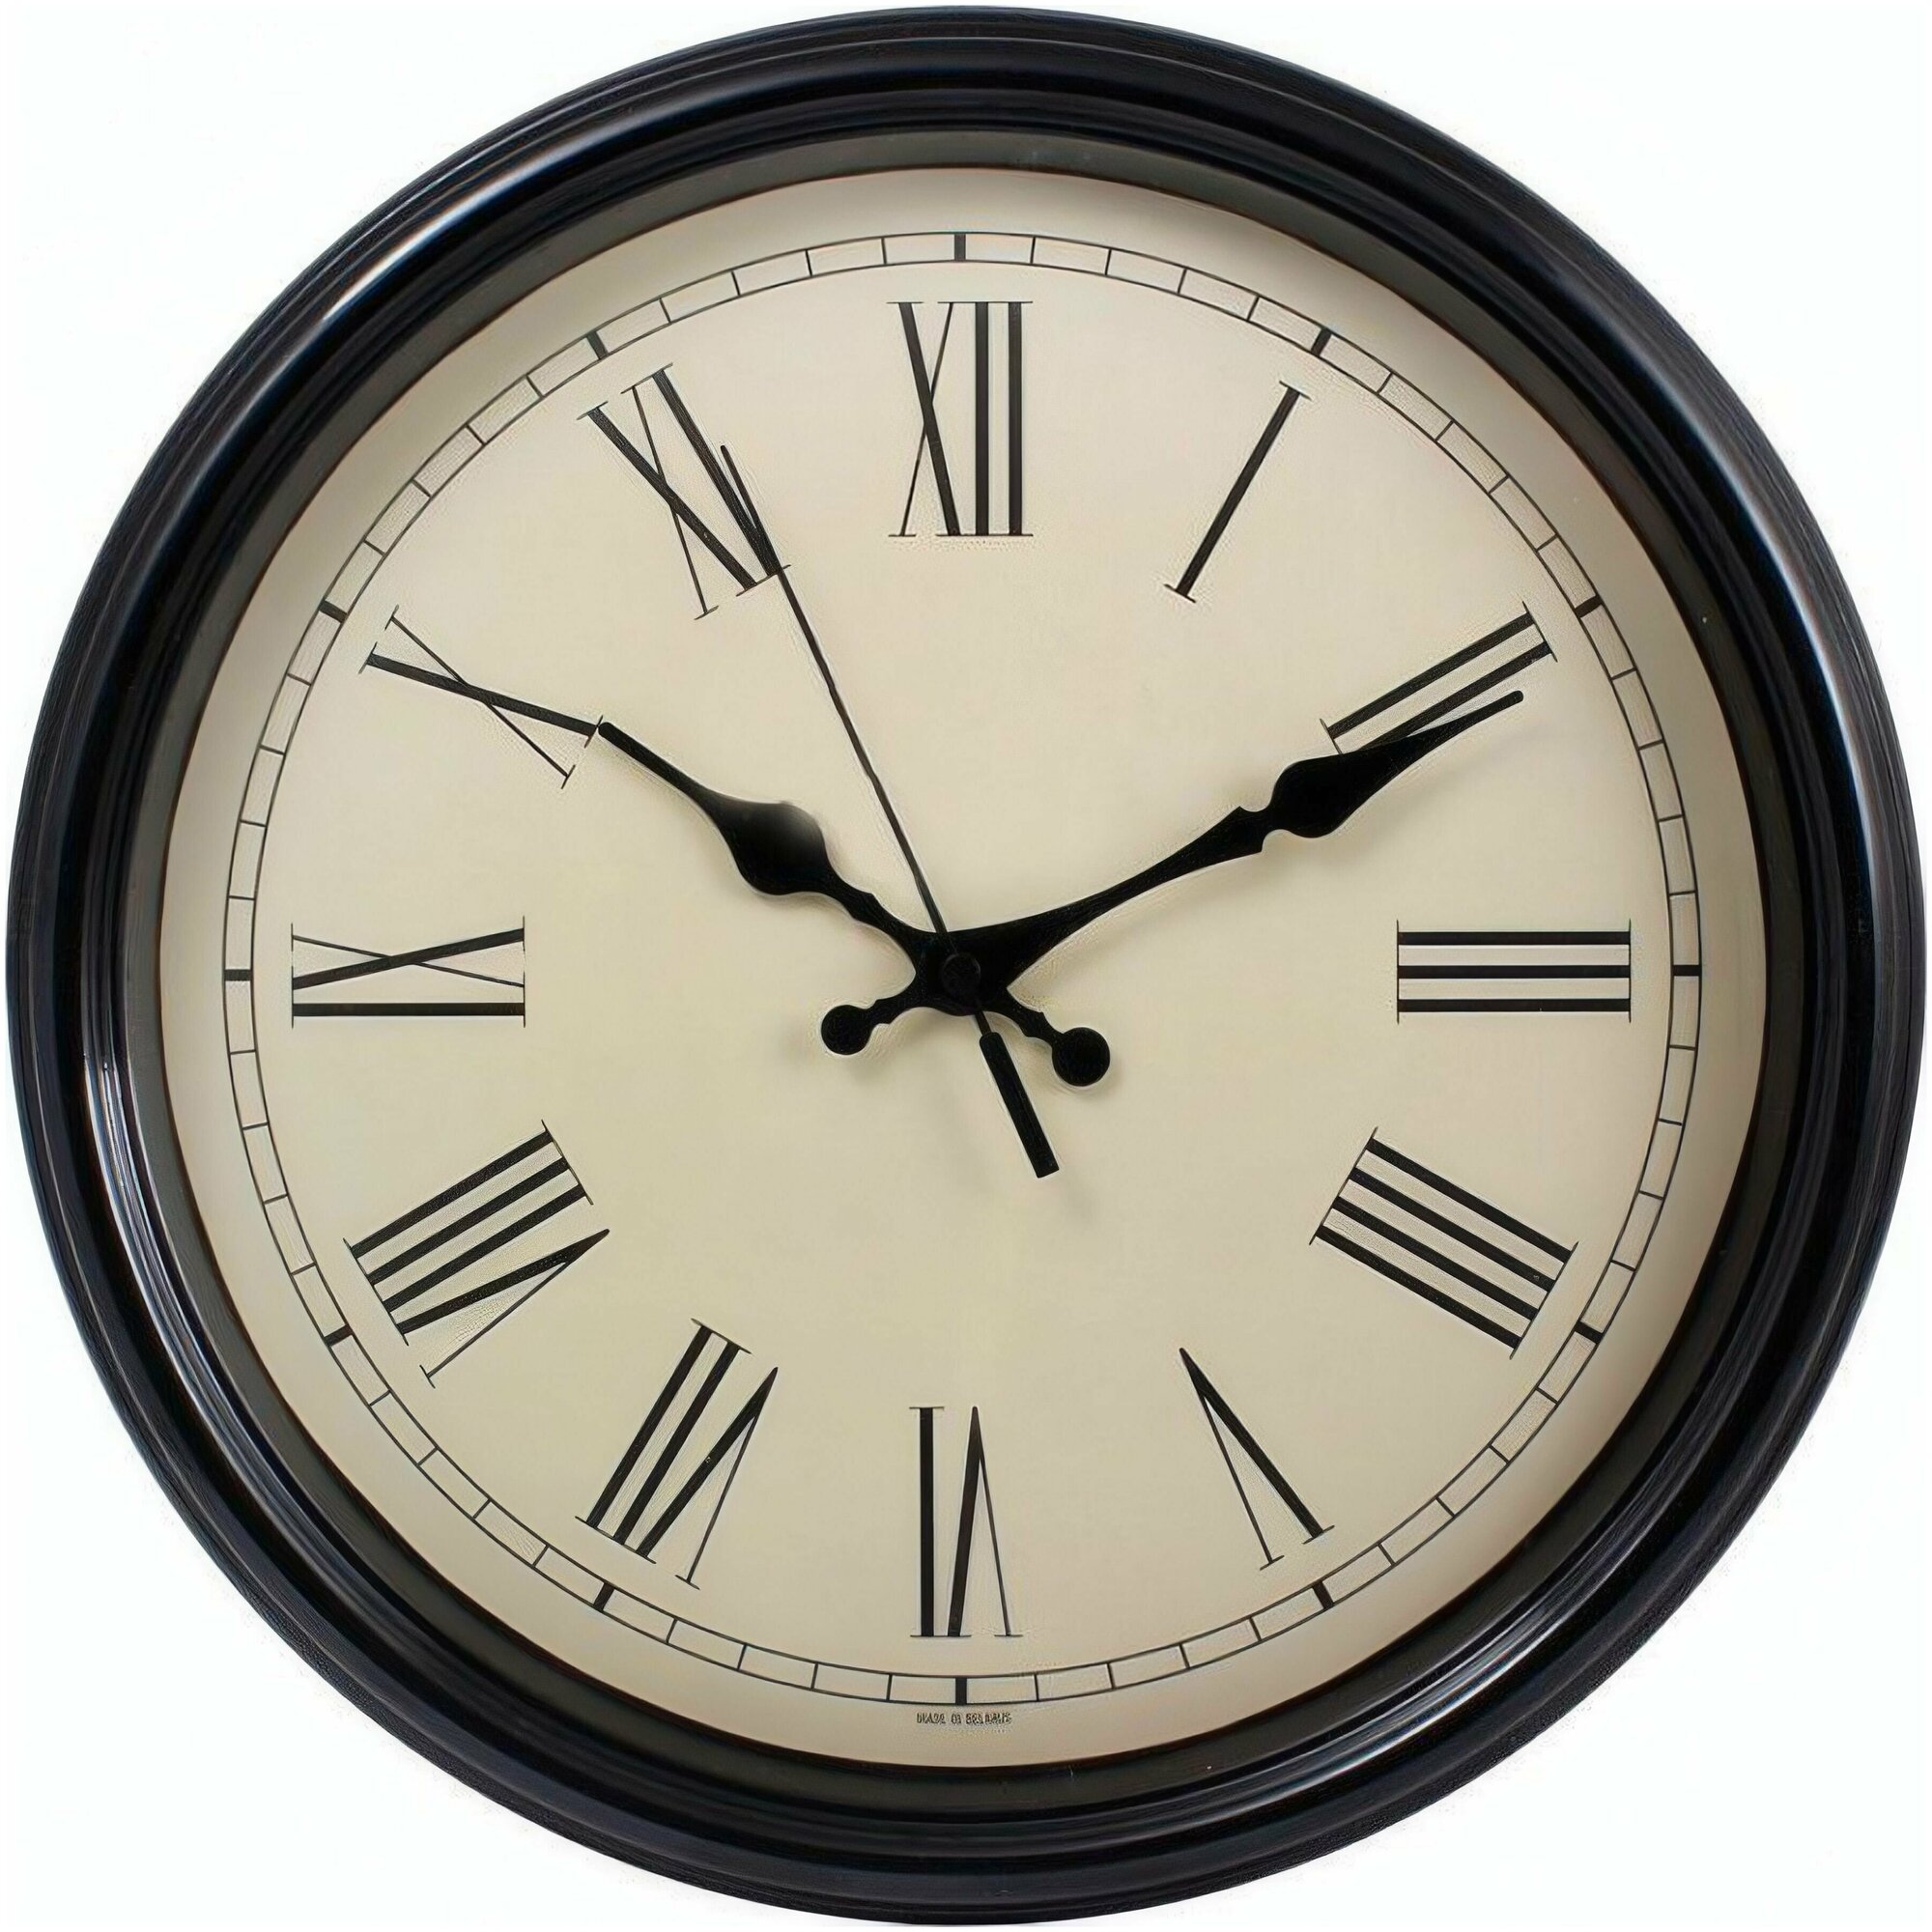 Часы настенные "Объем", цвет темно-коричневый, диаметр 30.5 см, тихий ход, в нео-классическом стиле, украсят вашу классическую гостиную, столовую, спа